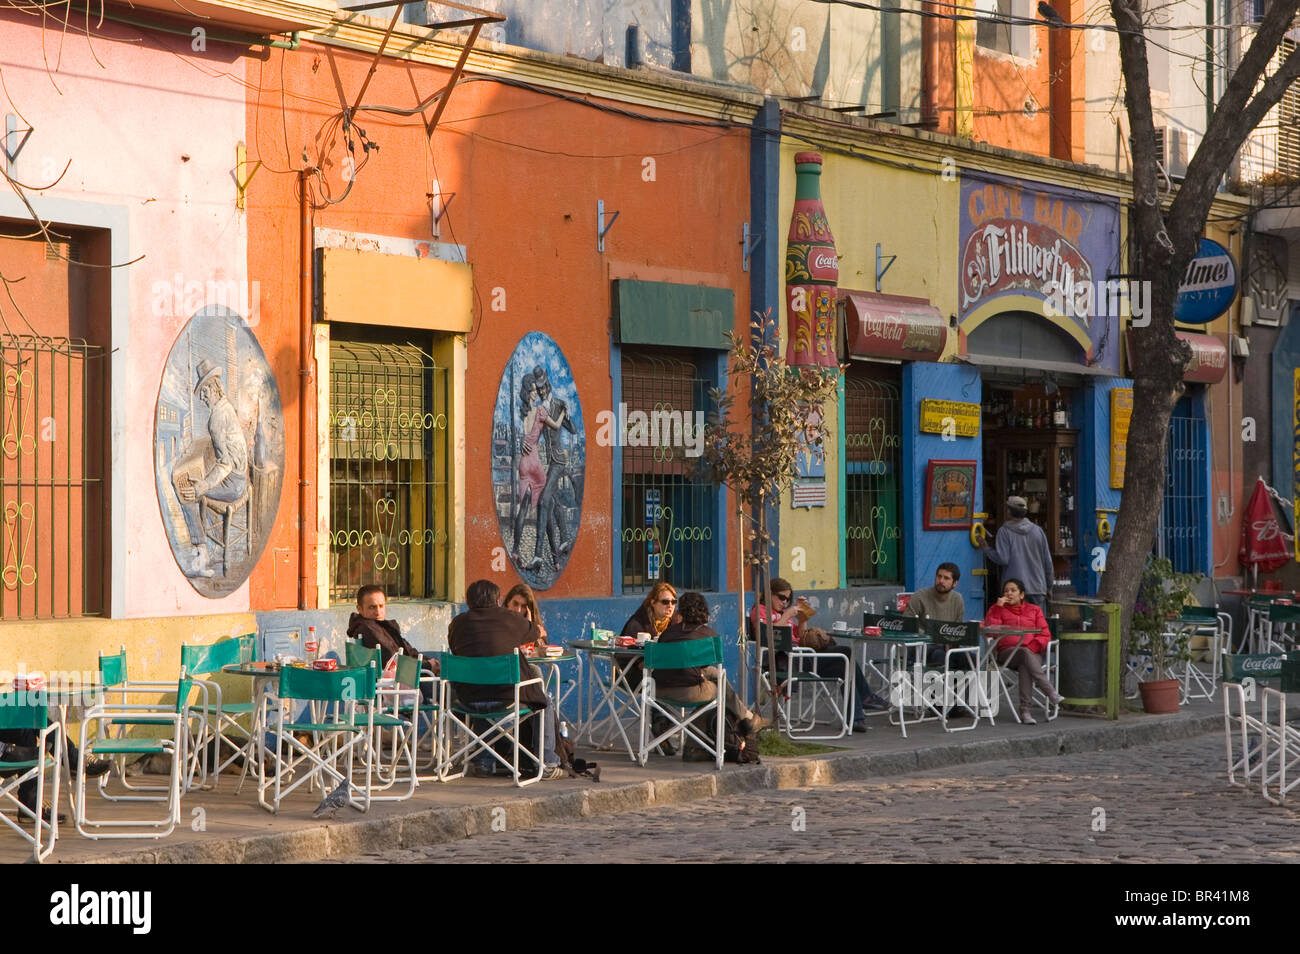 Cafe society dans une rue de Buenos Aires Banque D'Images